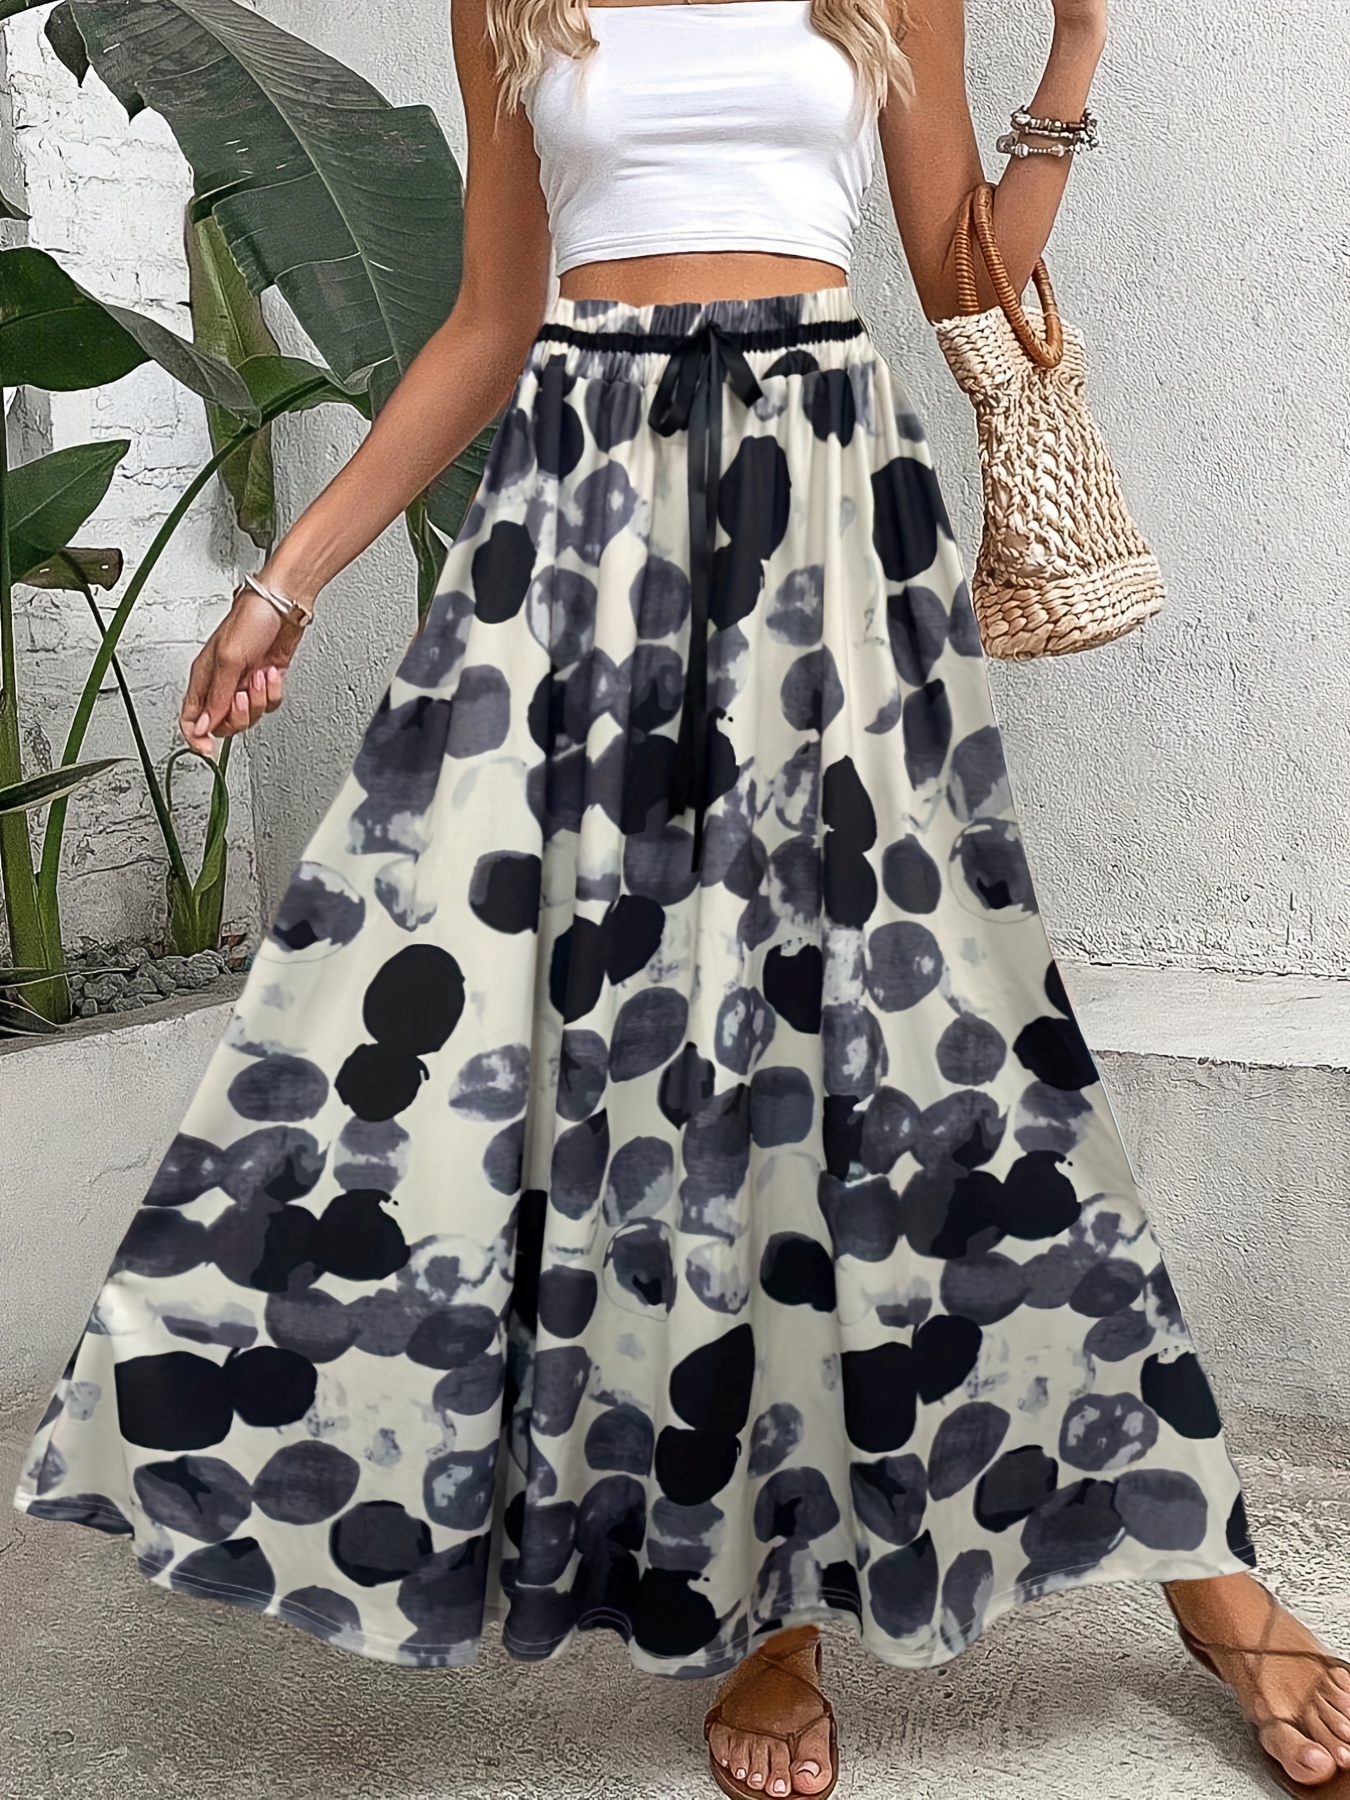 Polka Dot Print Elastic Waist Skirt, Casual Skirt For Spring & Summer ...